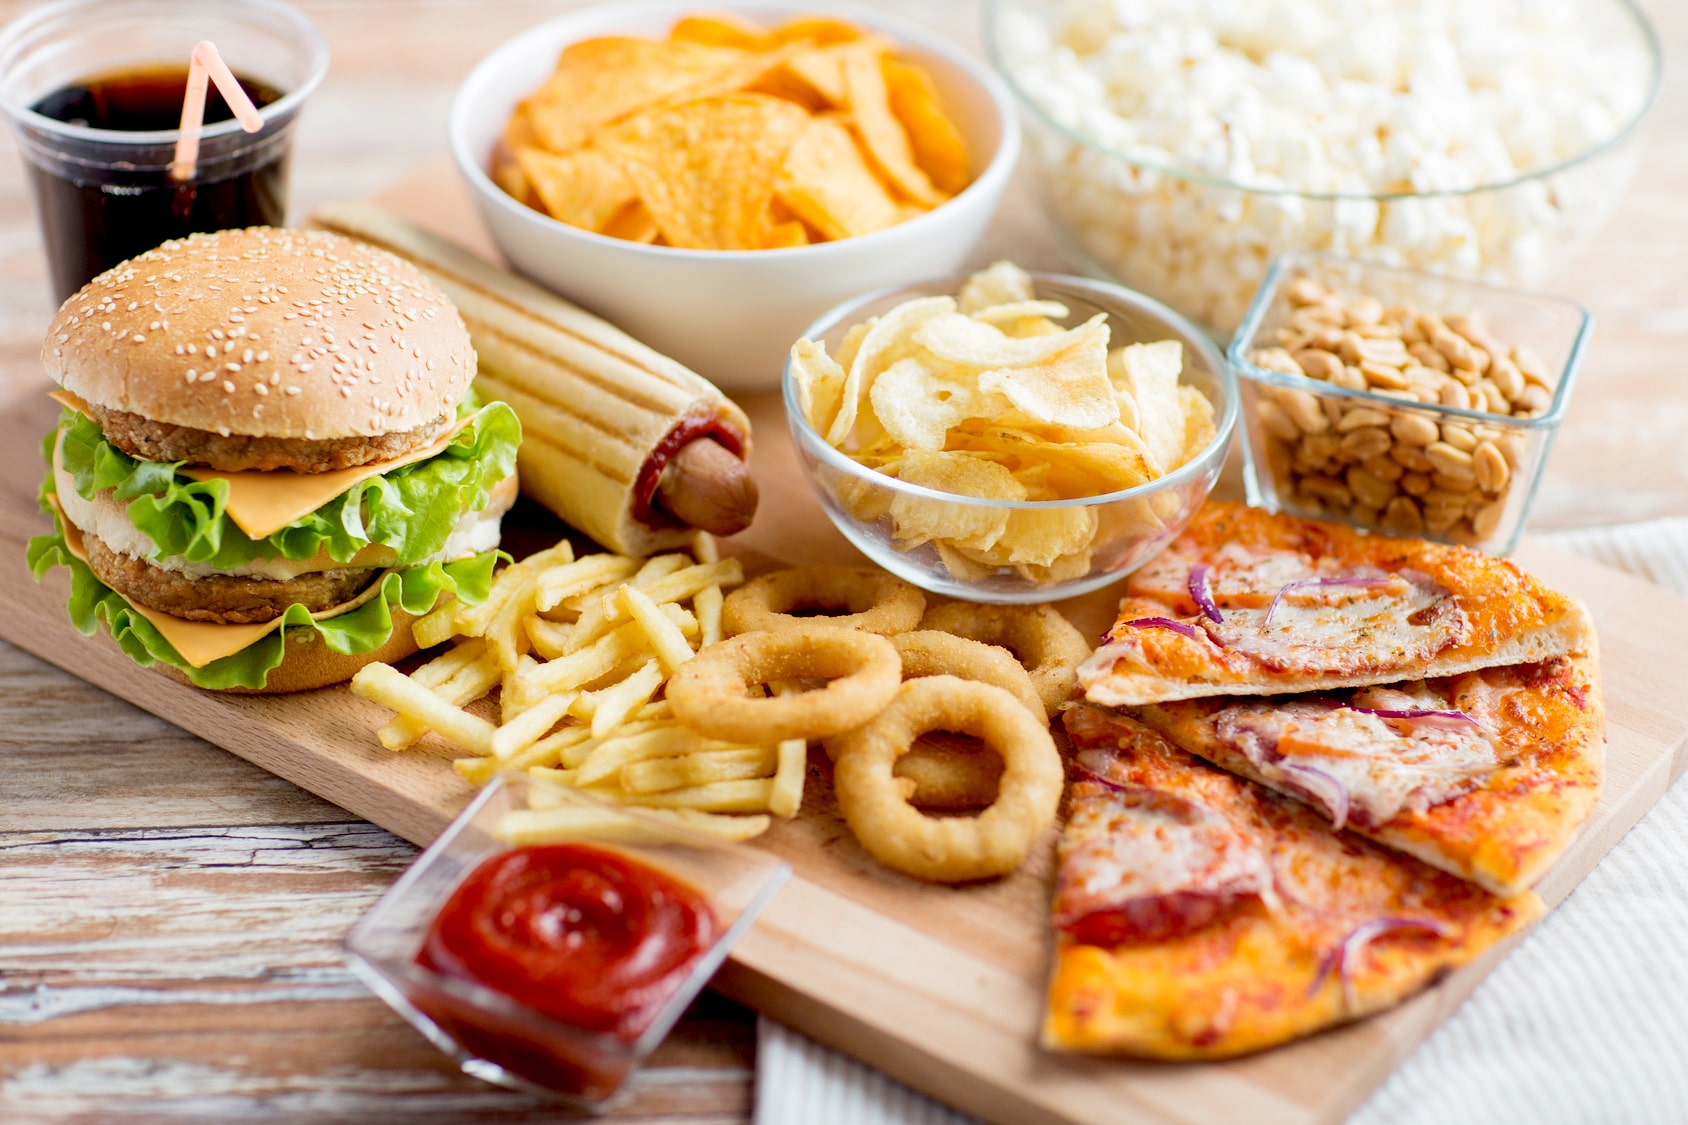 Đồ ăn vặt thường chứa nhiều đường, chất béo không tốt cho sức khỏe